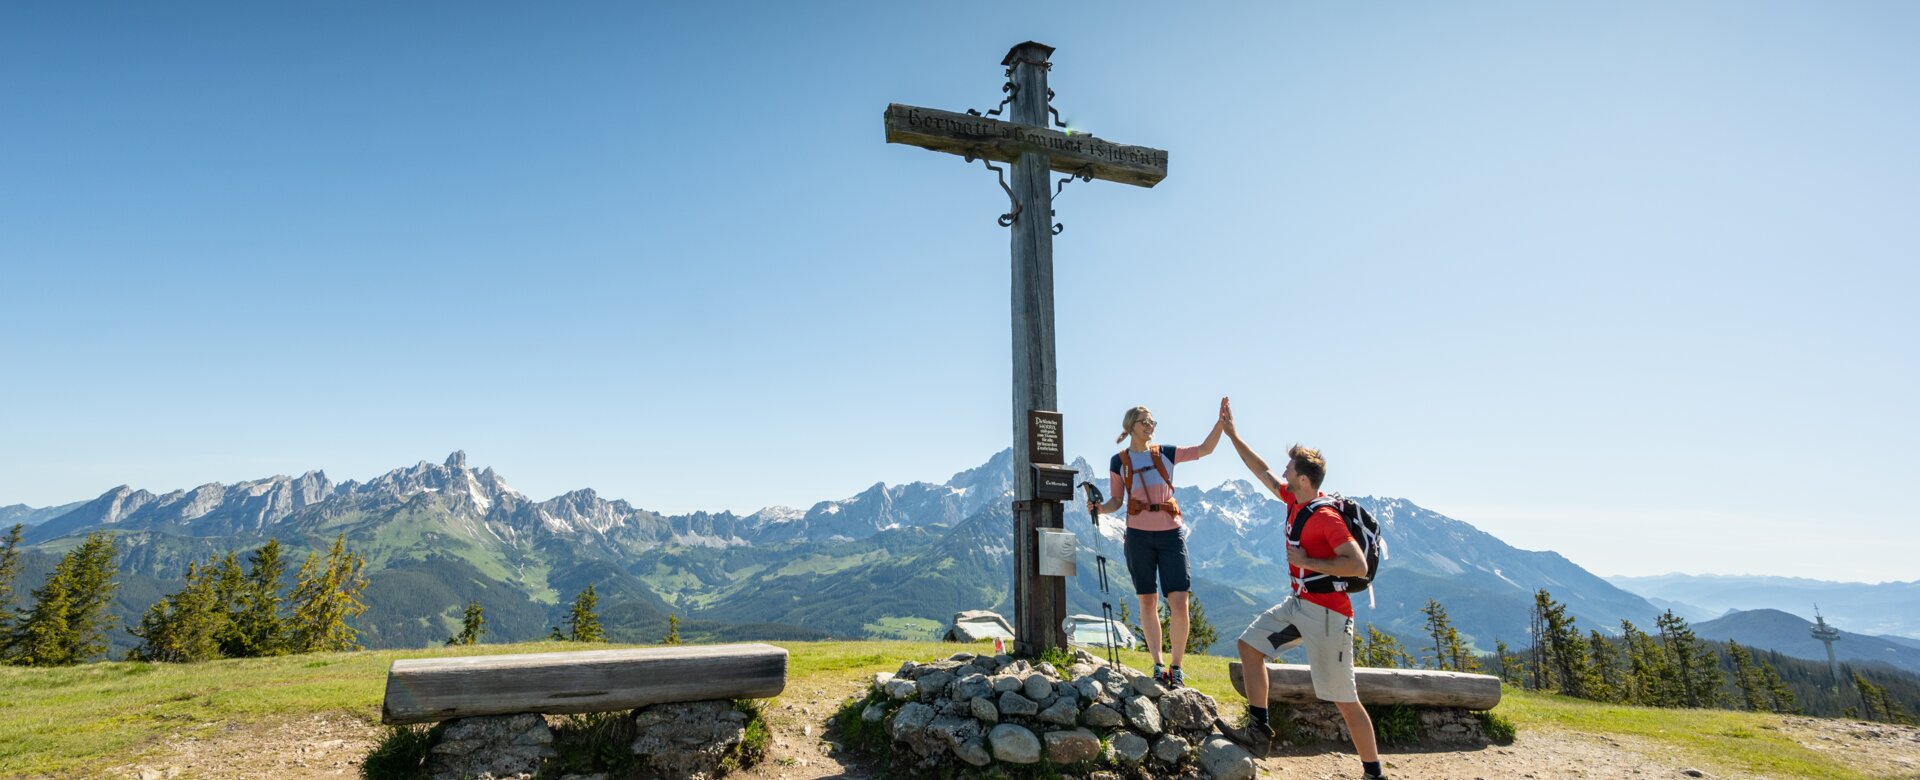 Zwei Personen stehen auf einem Plateau bei einem Gipfelkreuz und geben sich ein High Five | © Tourismusverband Radstadt/Lorenz Masser